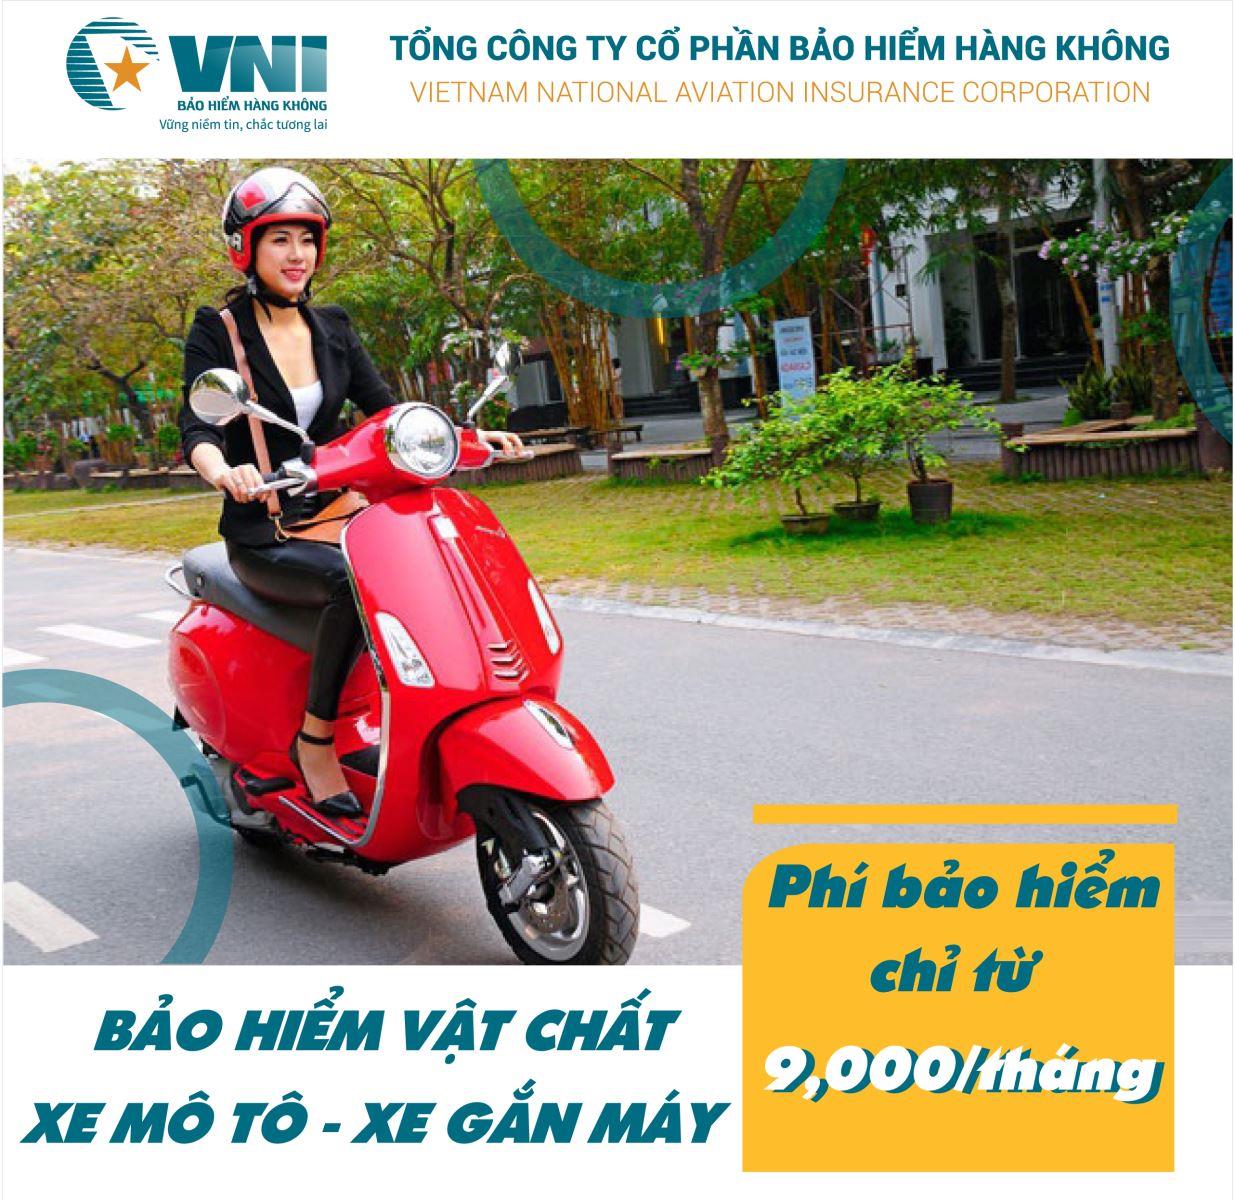 Bảo hiểm vật chất xe máy – VNI đồng hành cùng bạn trên mọi nẻo đường